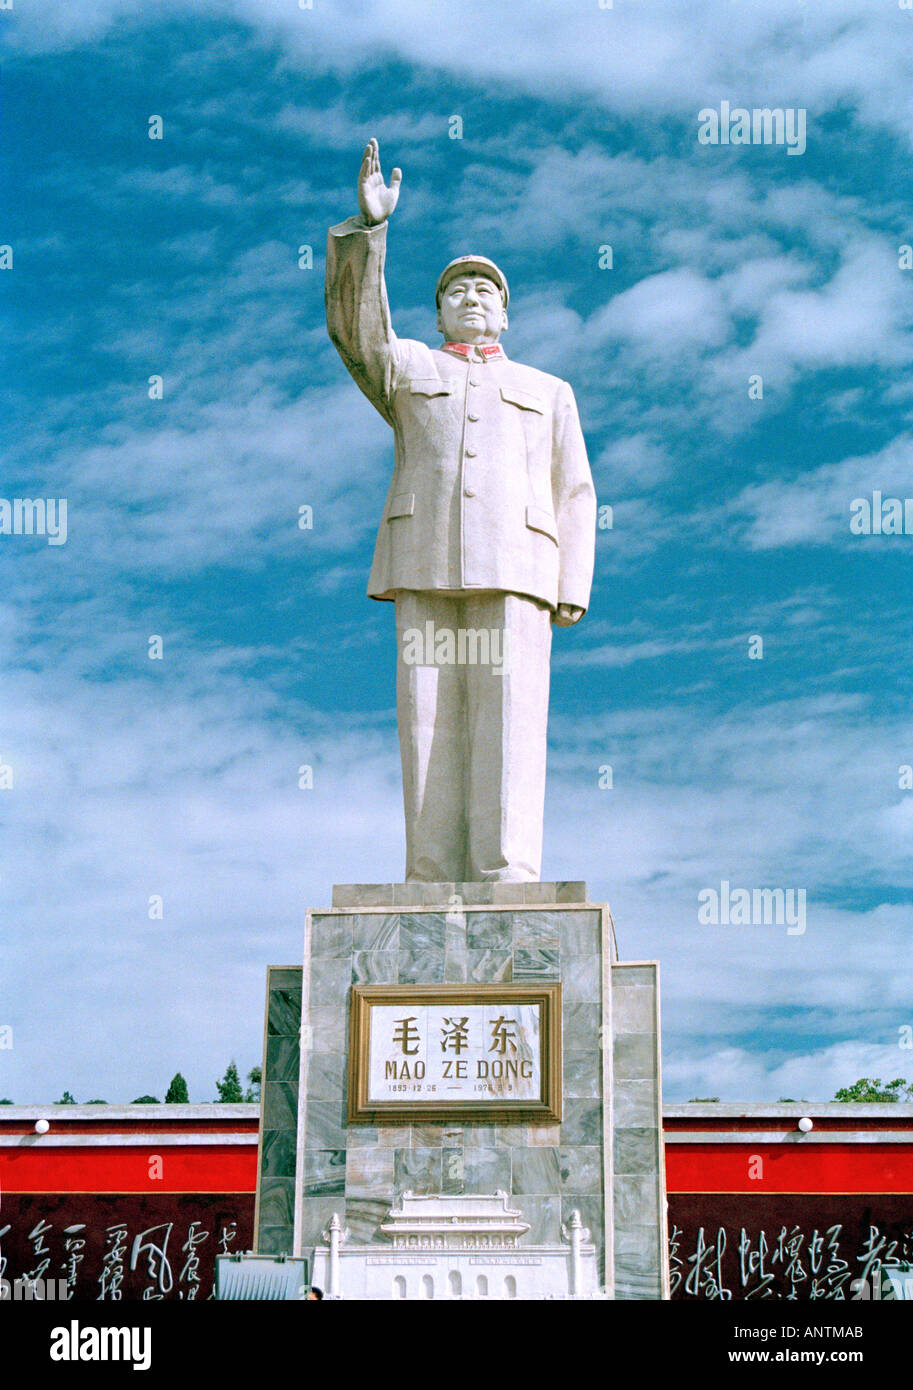 STATUE OF CHAIRMAN MAO TSE TUNG LIJIANG YUNNAN PEOPLE'S REPUBLIC OF CHINA Stock Photo